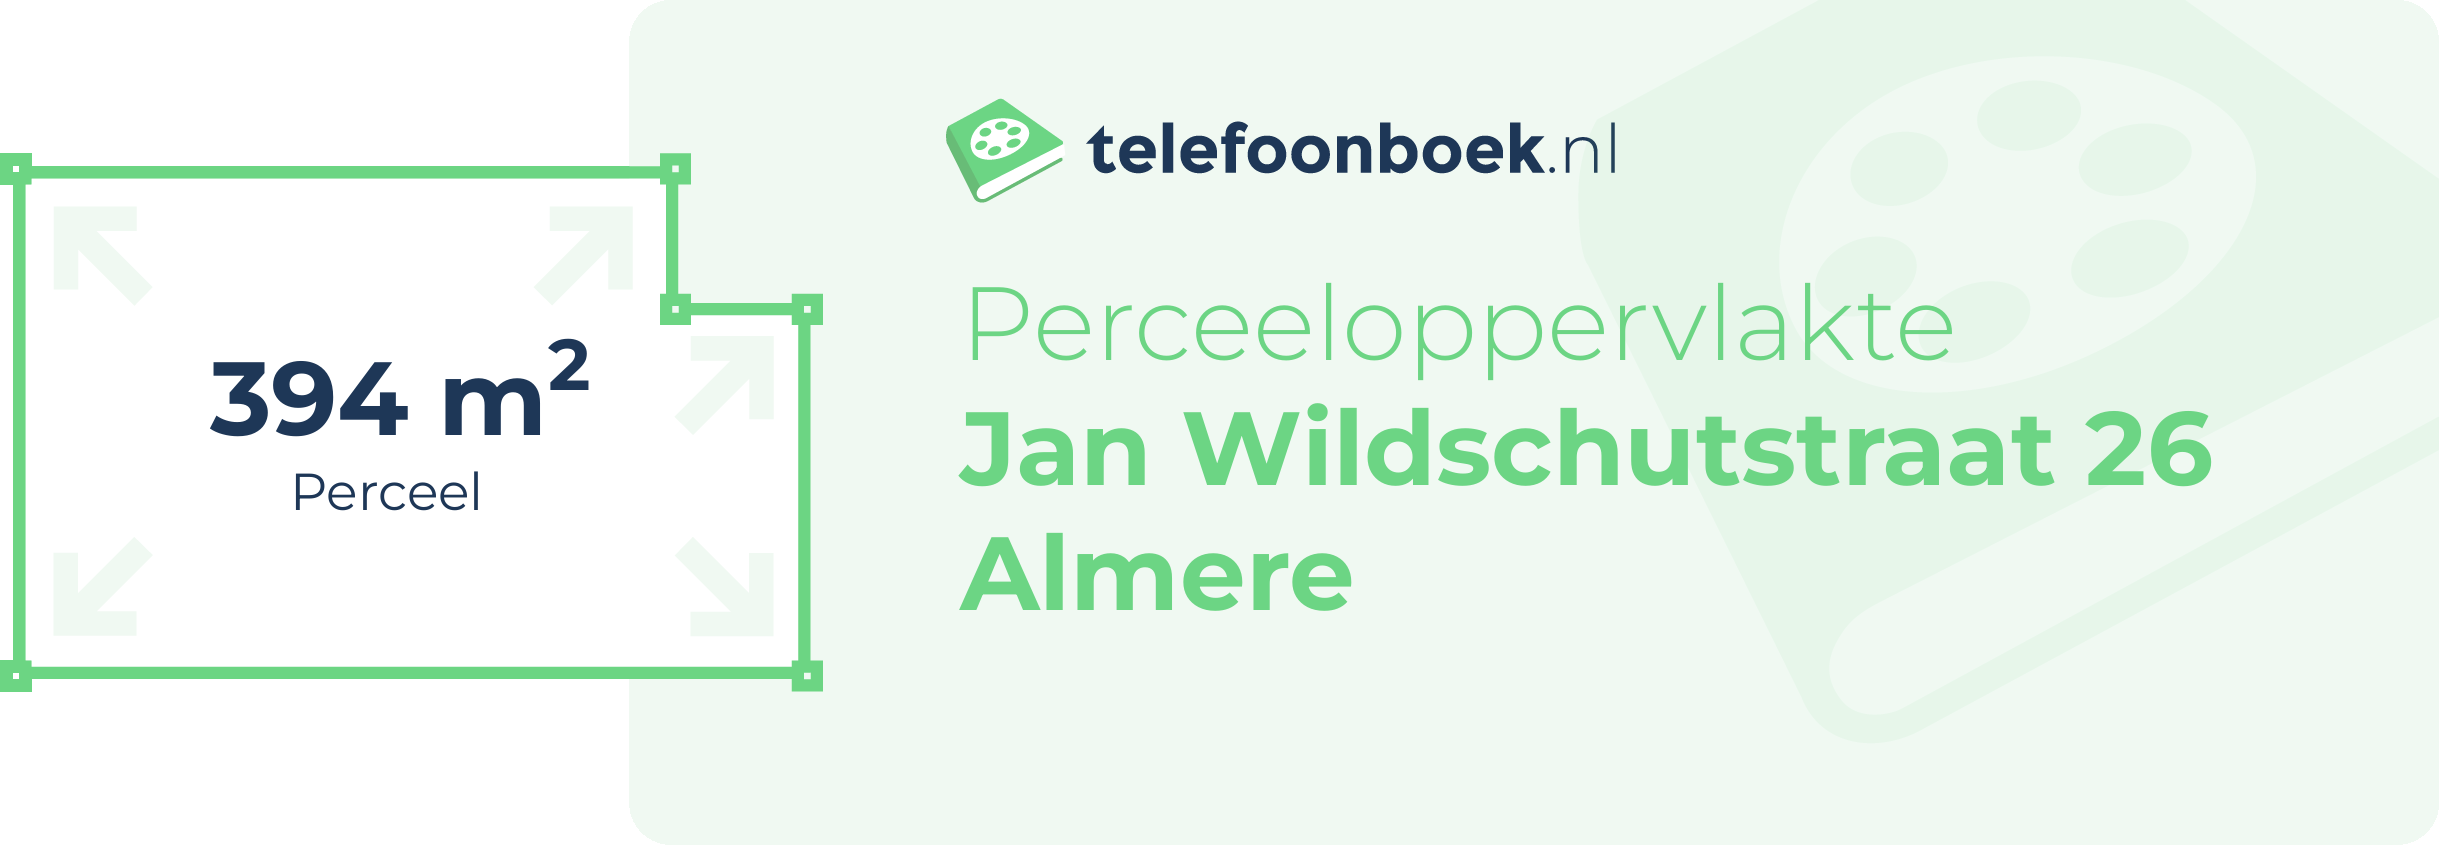 Perceeloppervlakte Jan Wildschutstraat 26 Almere